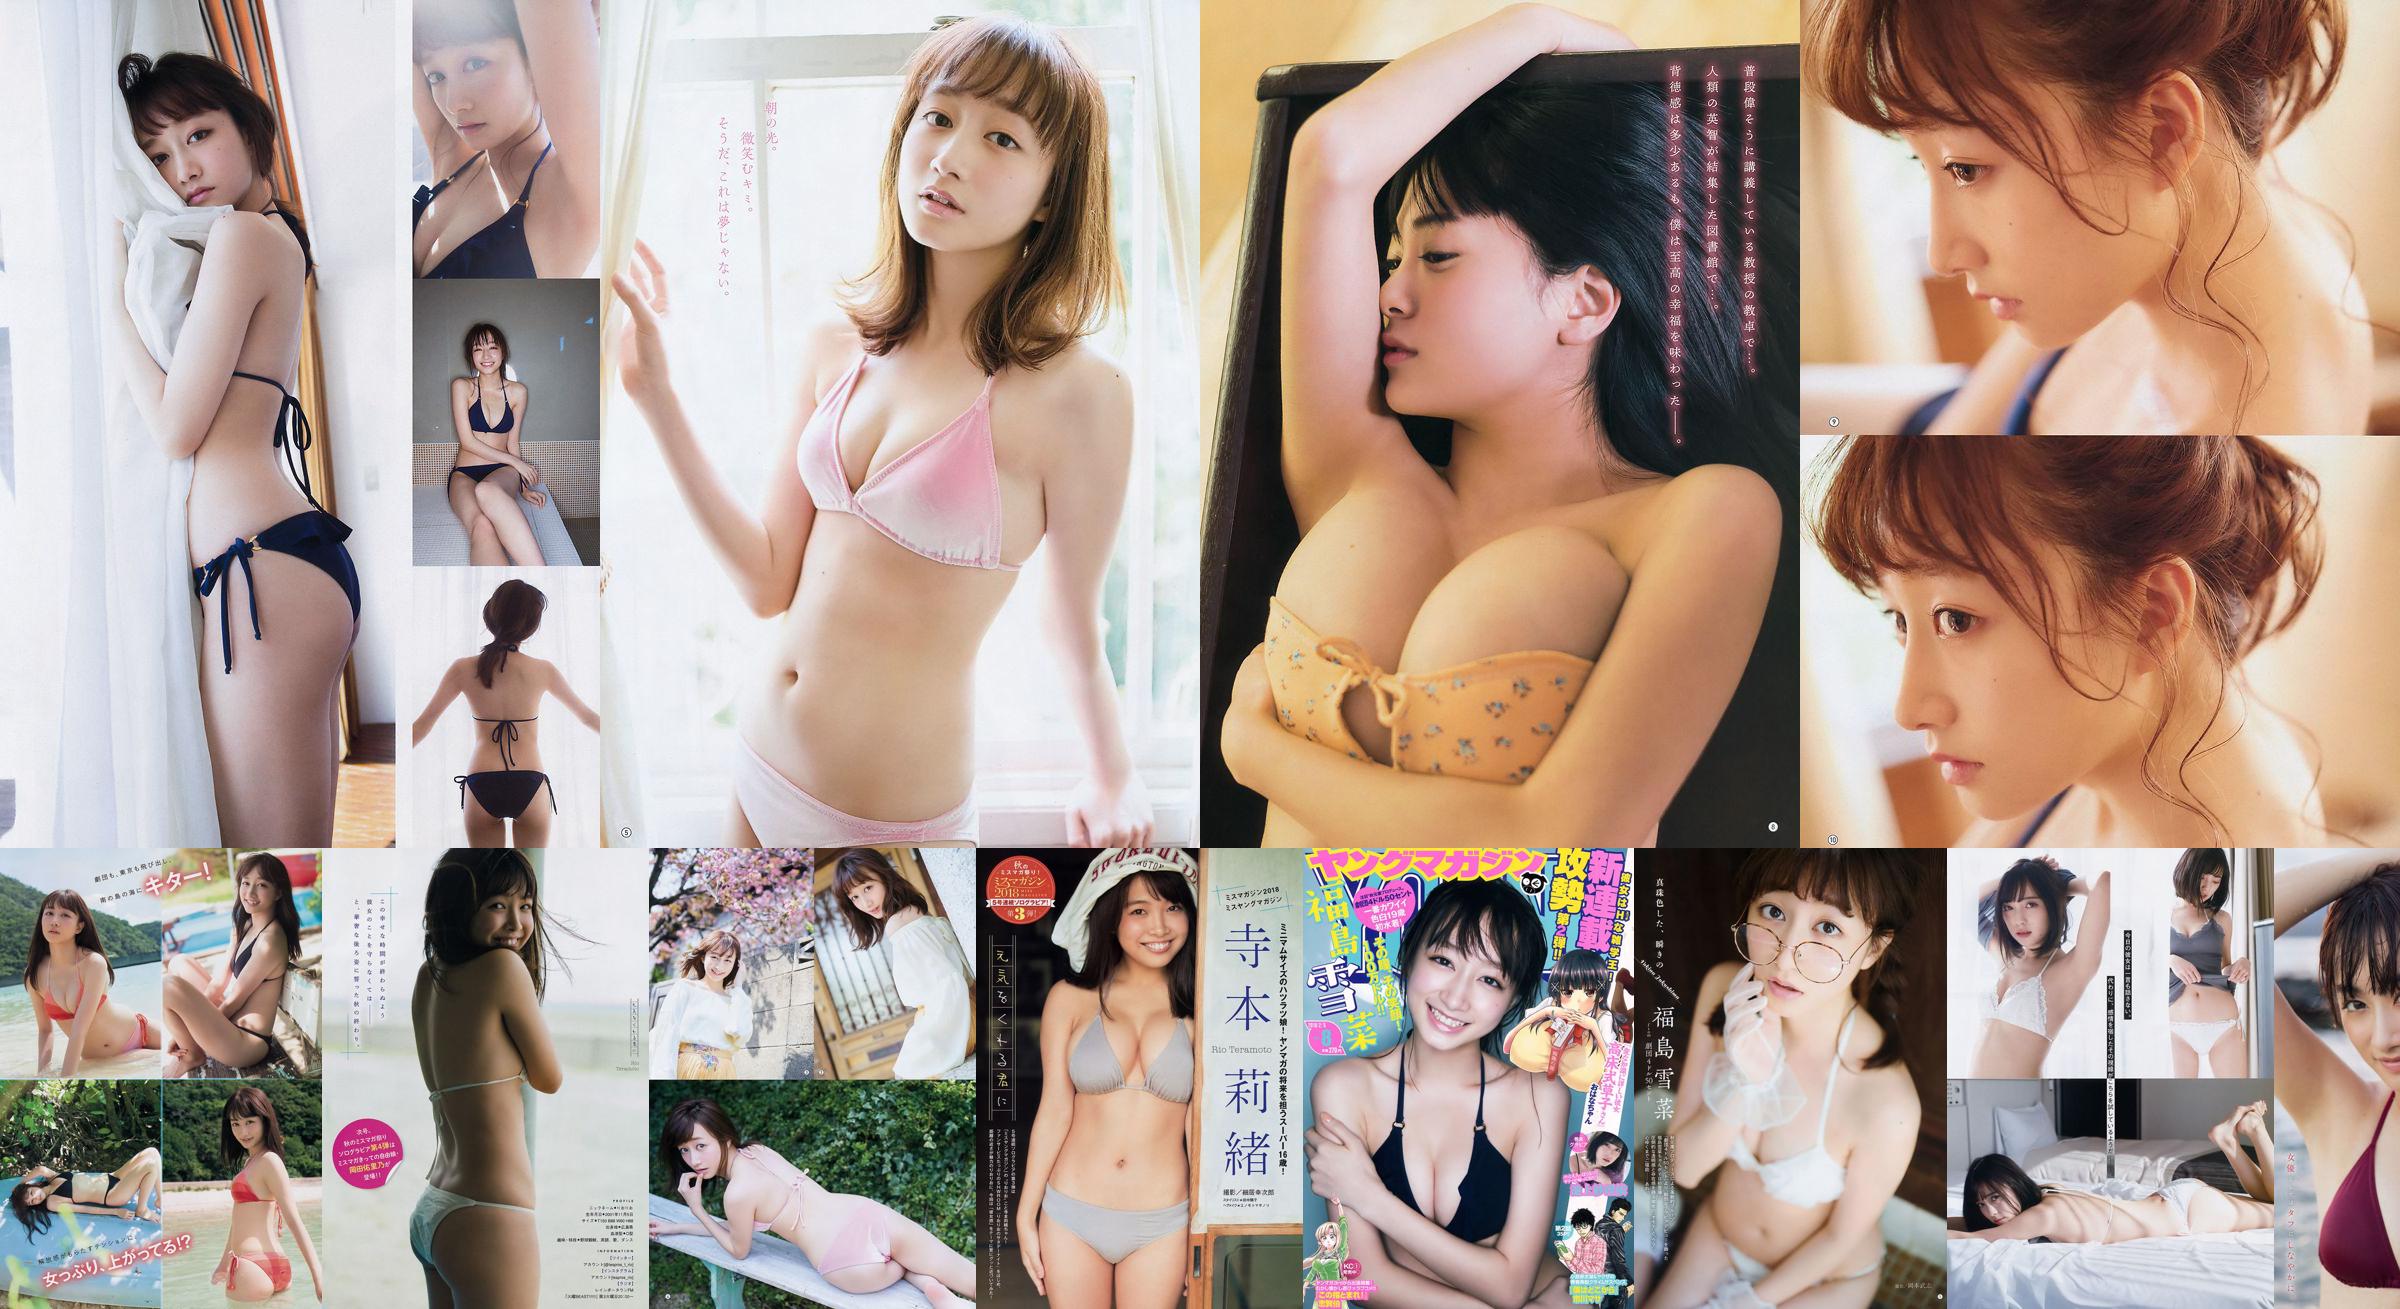 [Young Magazine] Fukushima Yukana und Saree Ikegami 2018 No.08 Photo Magazine No.848b87 Seite 1